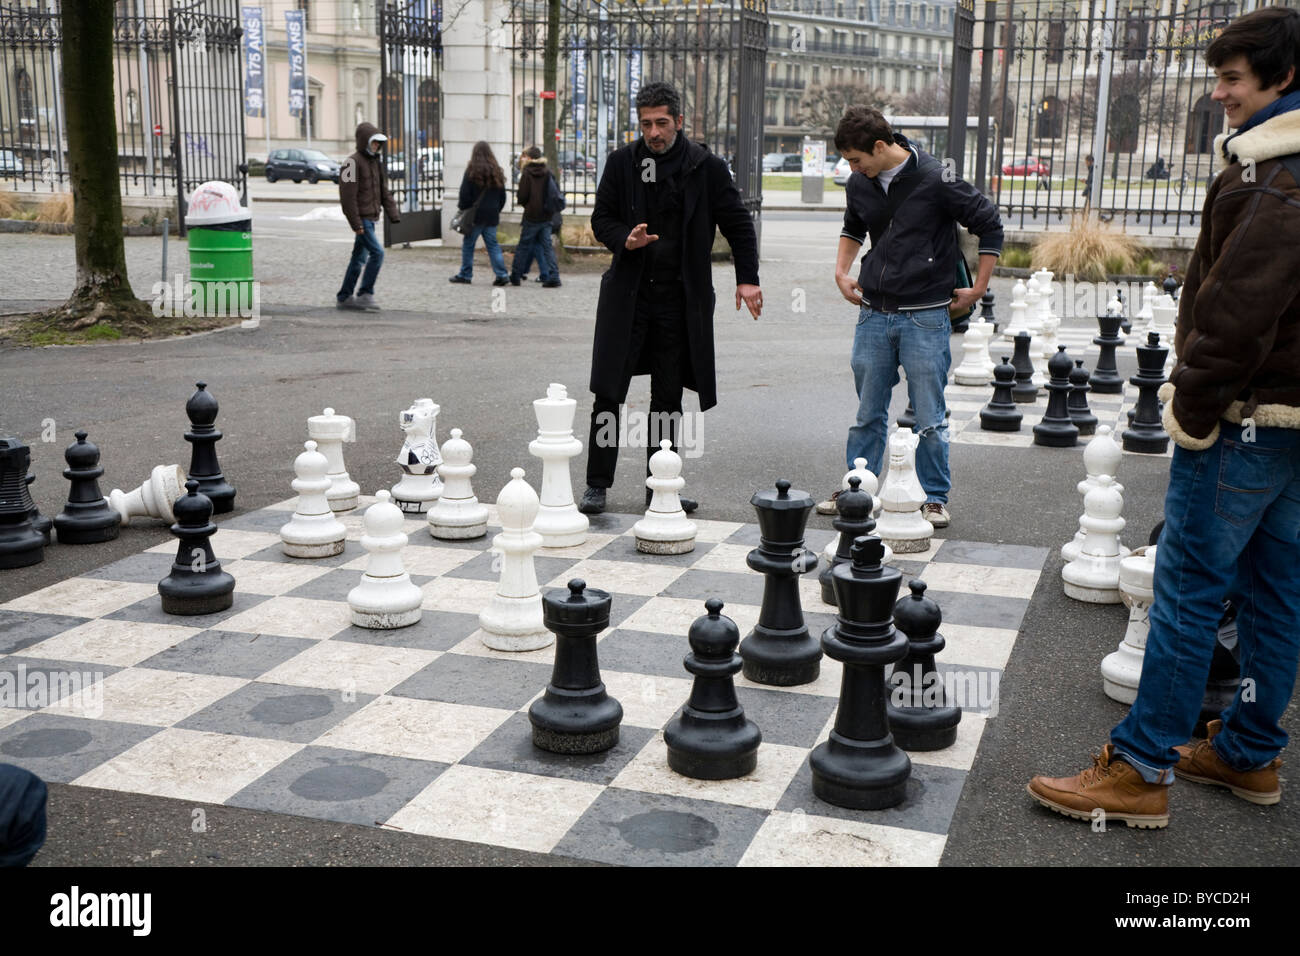 Les gens jouent à un jeu de très grandes / grand / grands échecs / géant dans un parc public à Genève / Geneva, Suisse. Banque D'Images